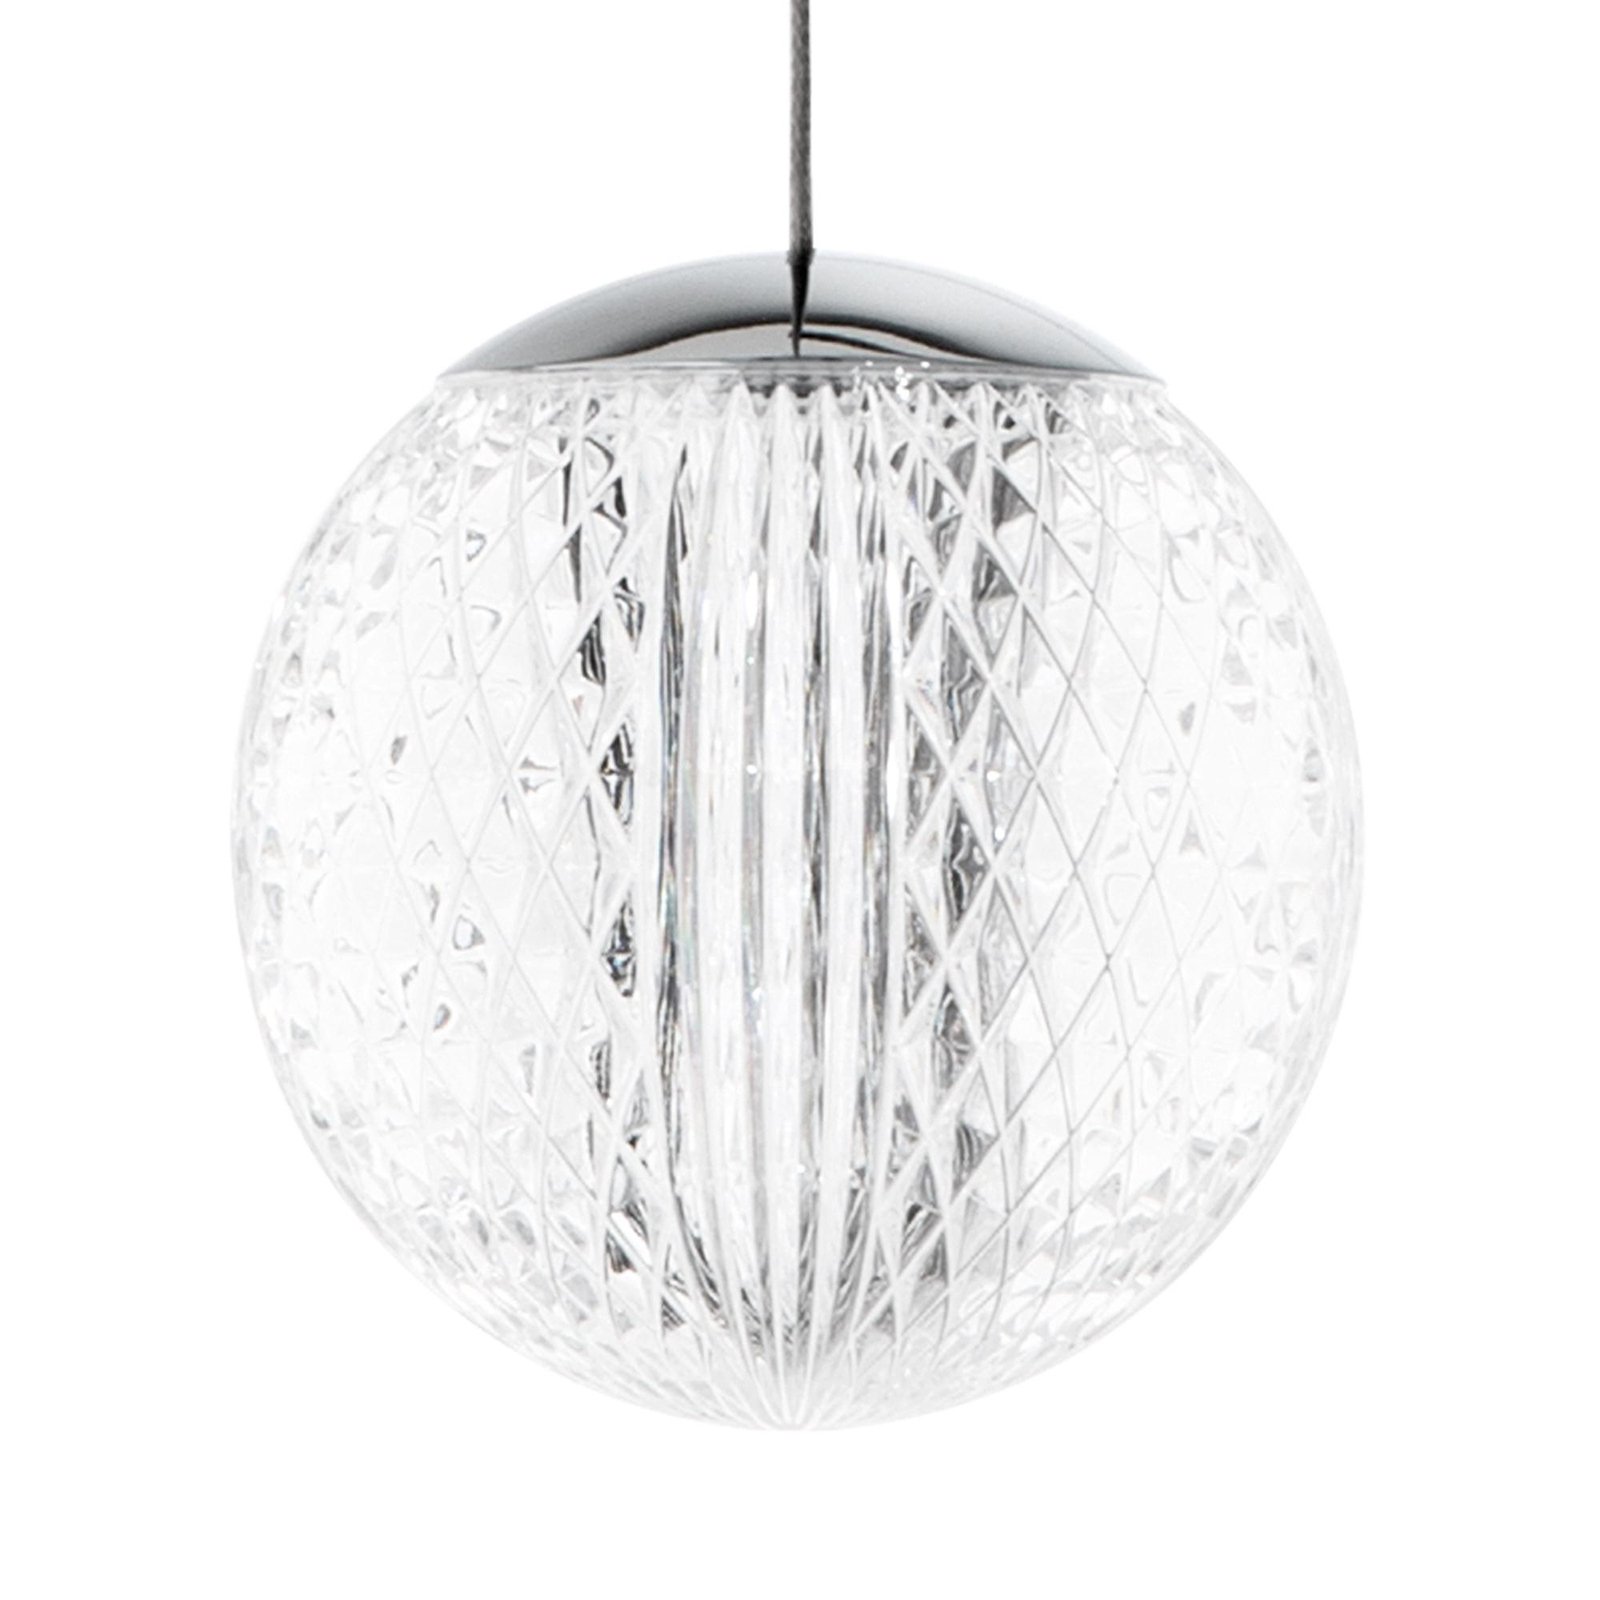 Ideal Lux hänglampa Diamond 1 lampa, kromfärgad/klar